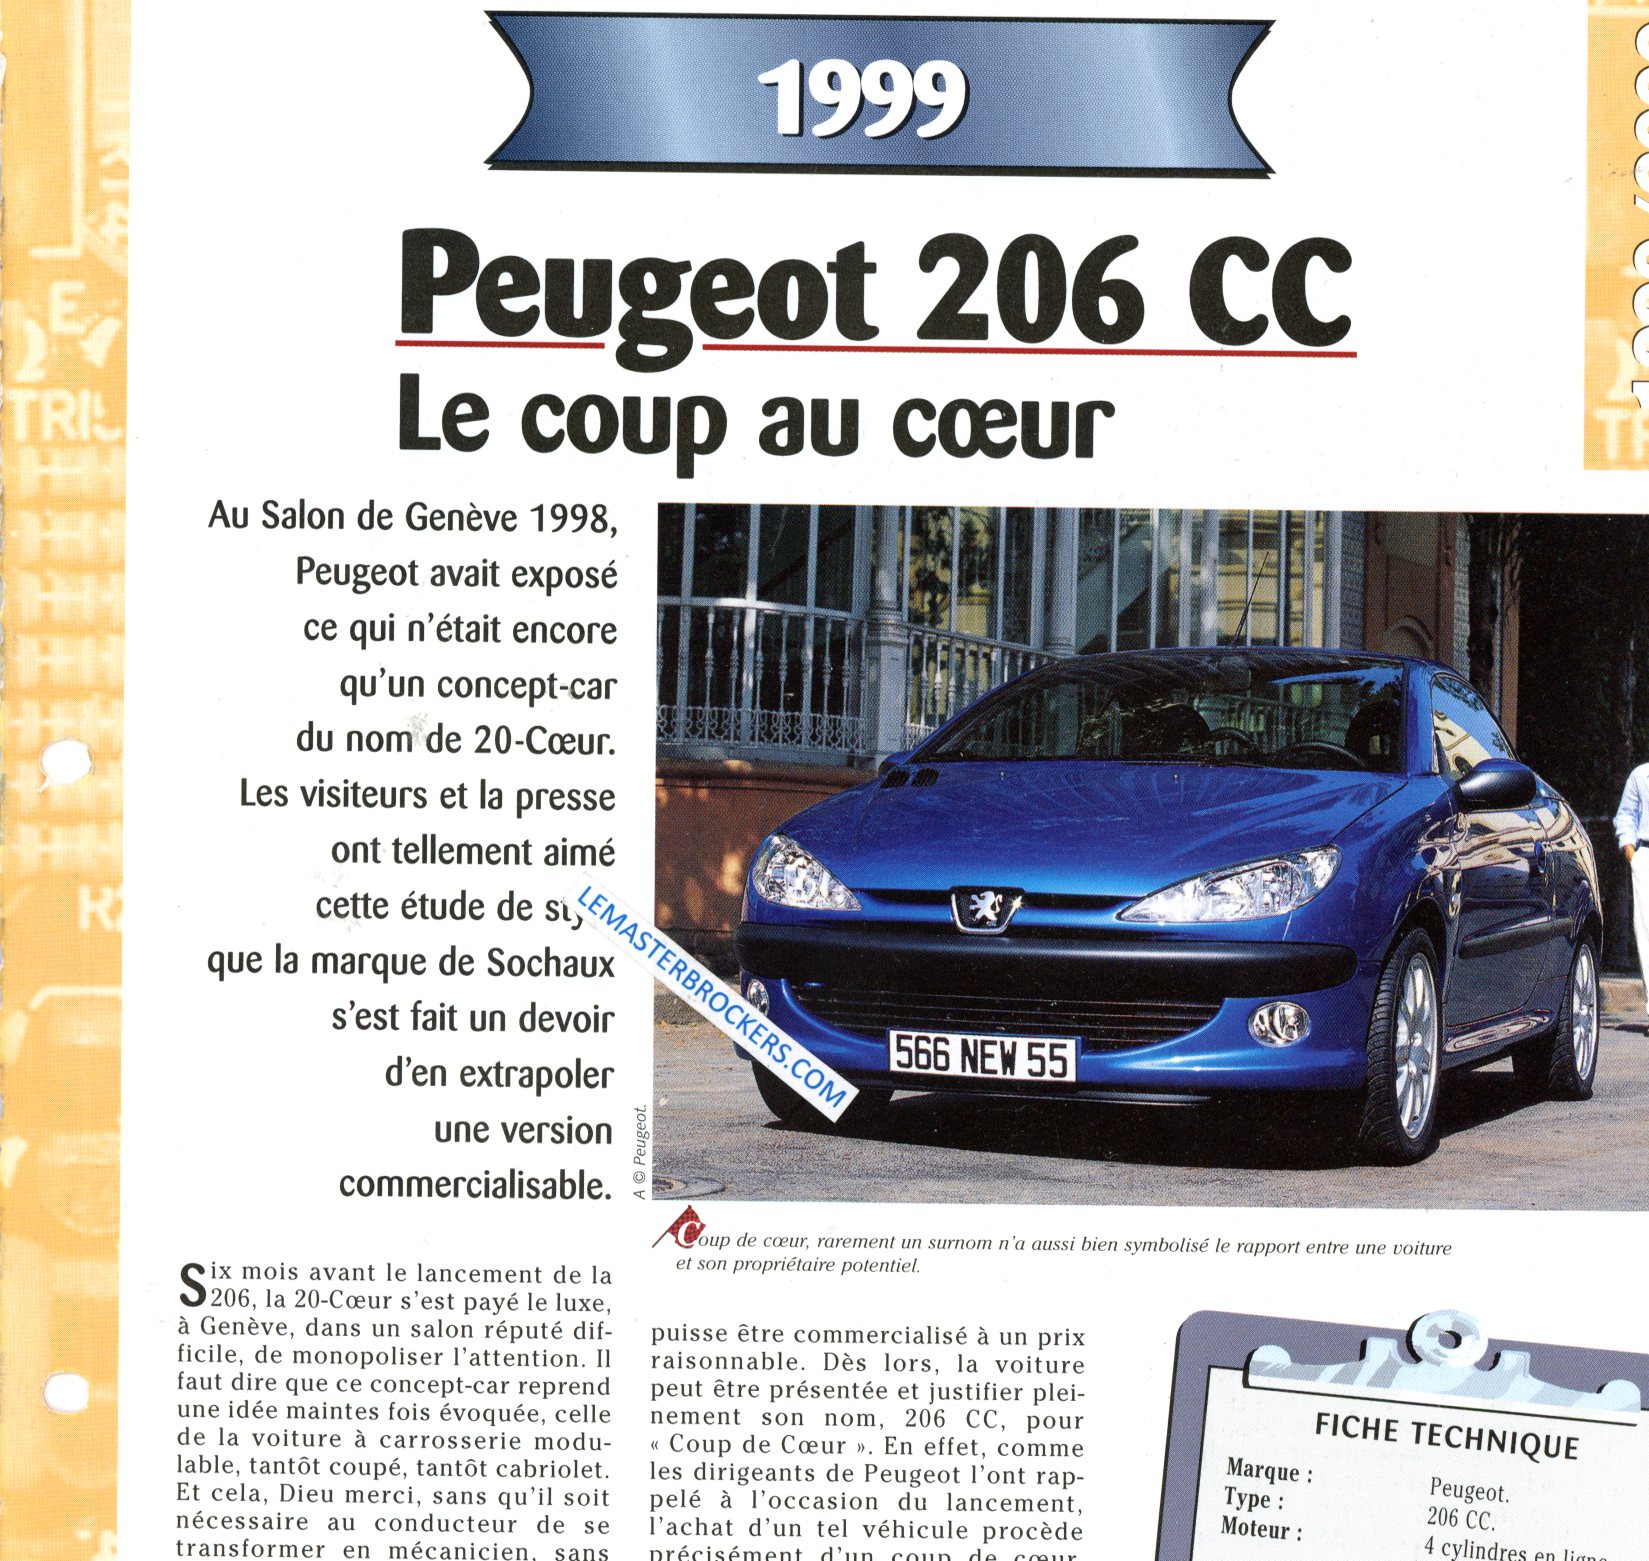 PEUGEOT 206 CC 1999 FICHE TECHNIQUE